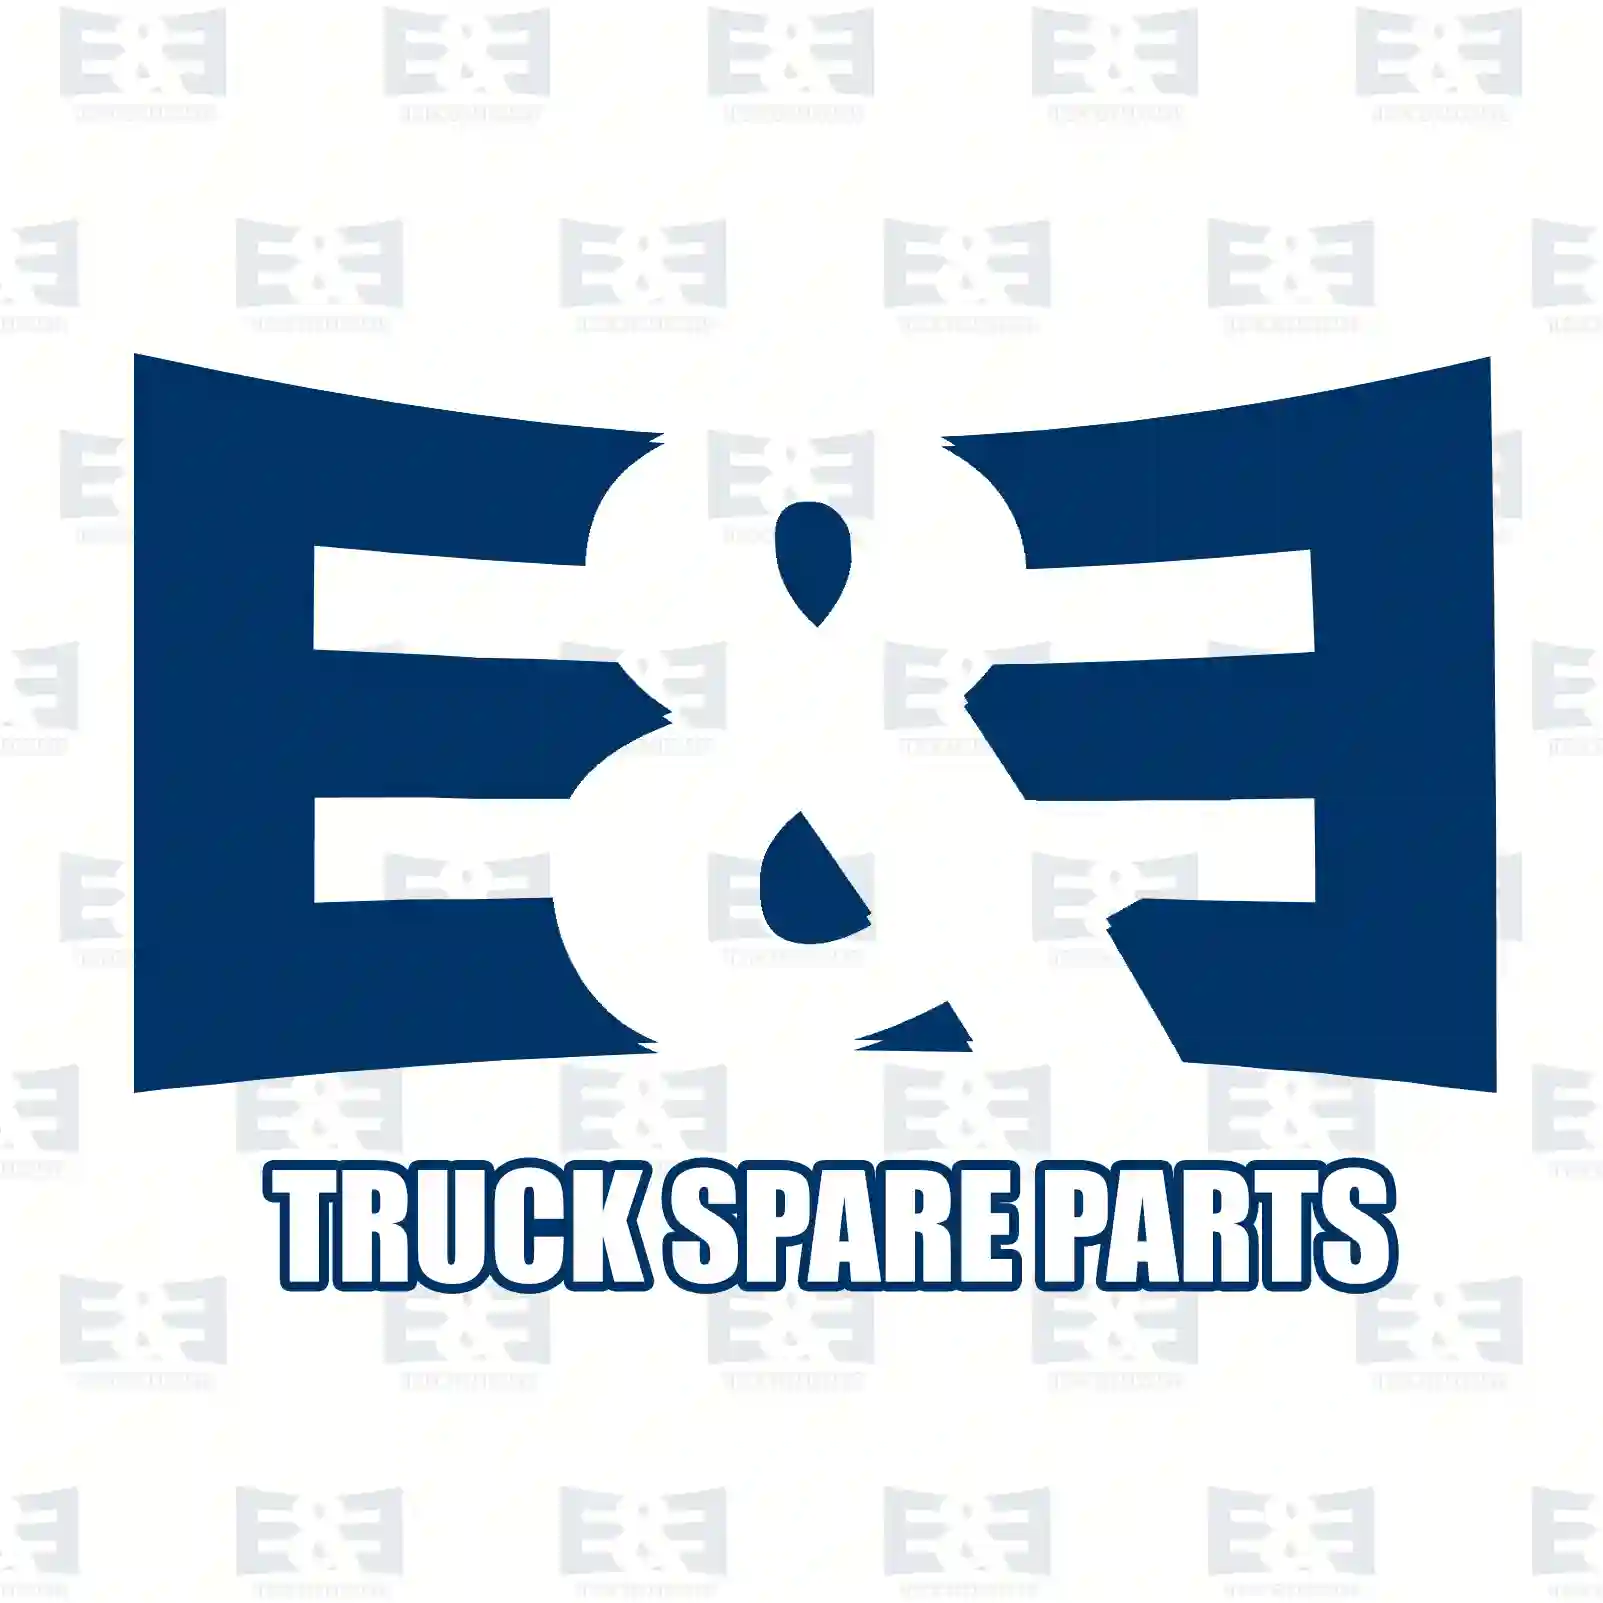 Headlamp, right, 2E2290833, 81251016352, 81251016382, 81251016404, 81251016422, 81251016430, 81251016438, 81251016450, 81251016458, 81251016466, 81251016579, 81251016587, 81251016595, 81251019422 ||  2E2290833 E&E Truck Spare Parts | Truck Spare Parts, Auotomotive Spare Parts Headlamp, right, 2E2290833, 81251016352, 81251016382, 81251016404, 81251016422, 81251016430, 81251016438, 81251016450, 81251016458, 81251016466, 81251016579, 81251016587, 81251016595, 81251019422 ||  2E2290833 E&E Truck Spare Parts | Truck Spare Parts, Auotomotive Spare Parts